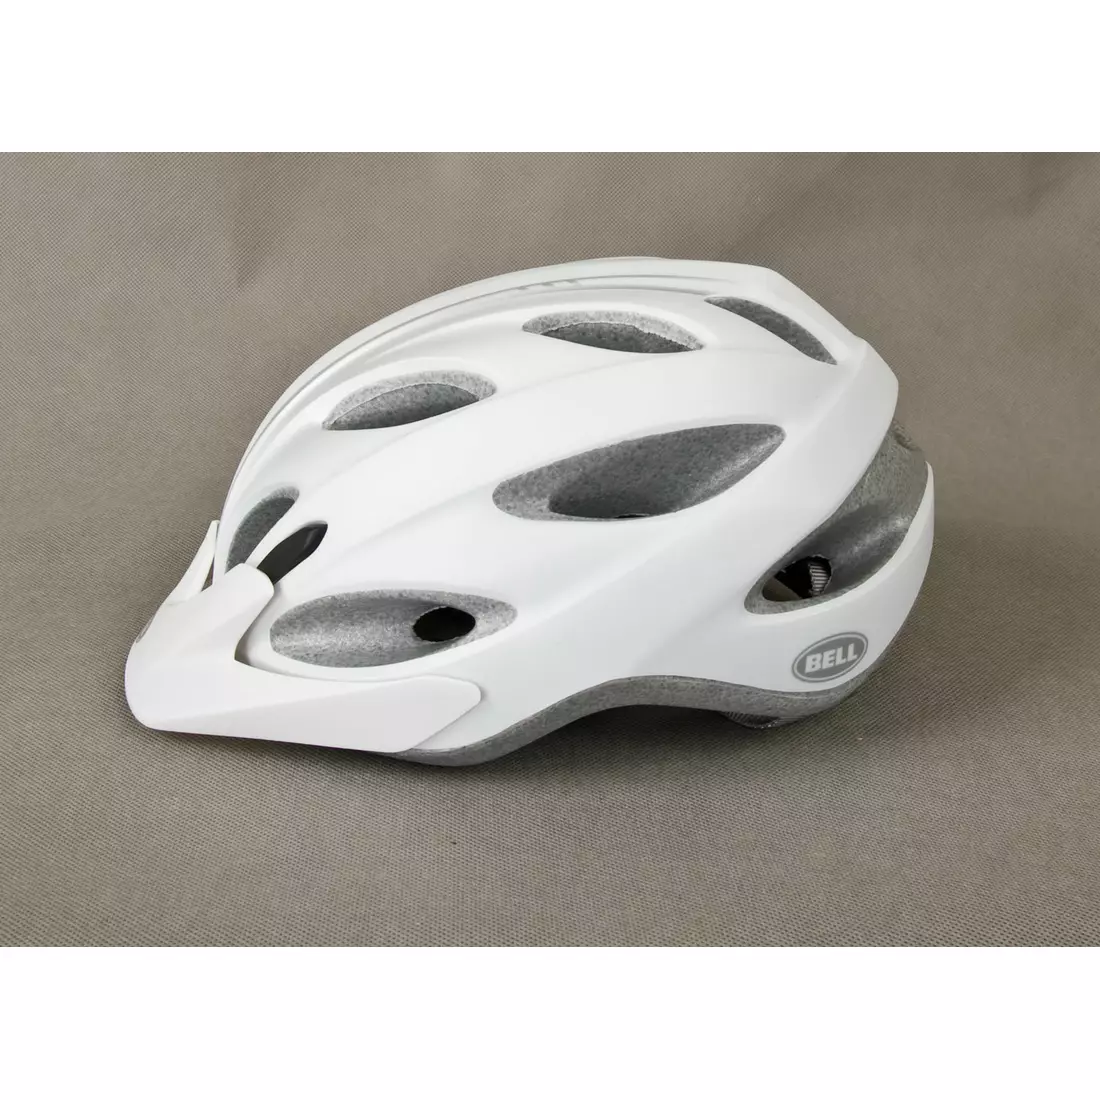 BELL bicycle helmet PISTON white